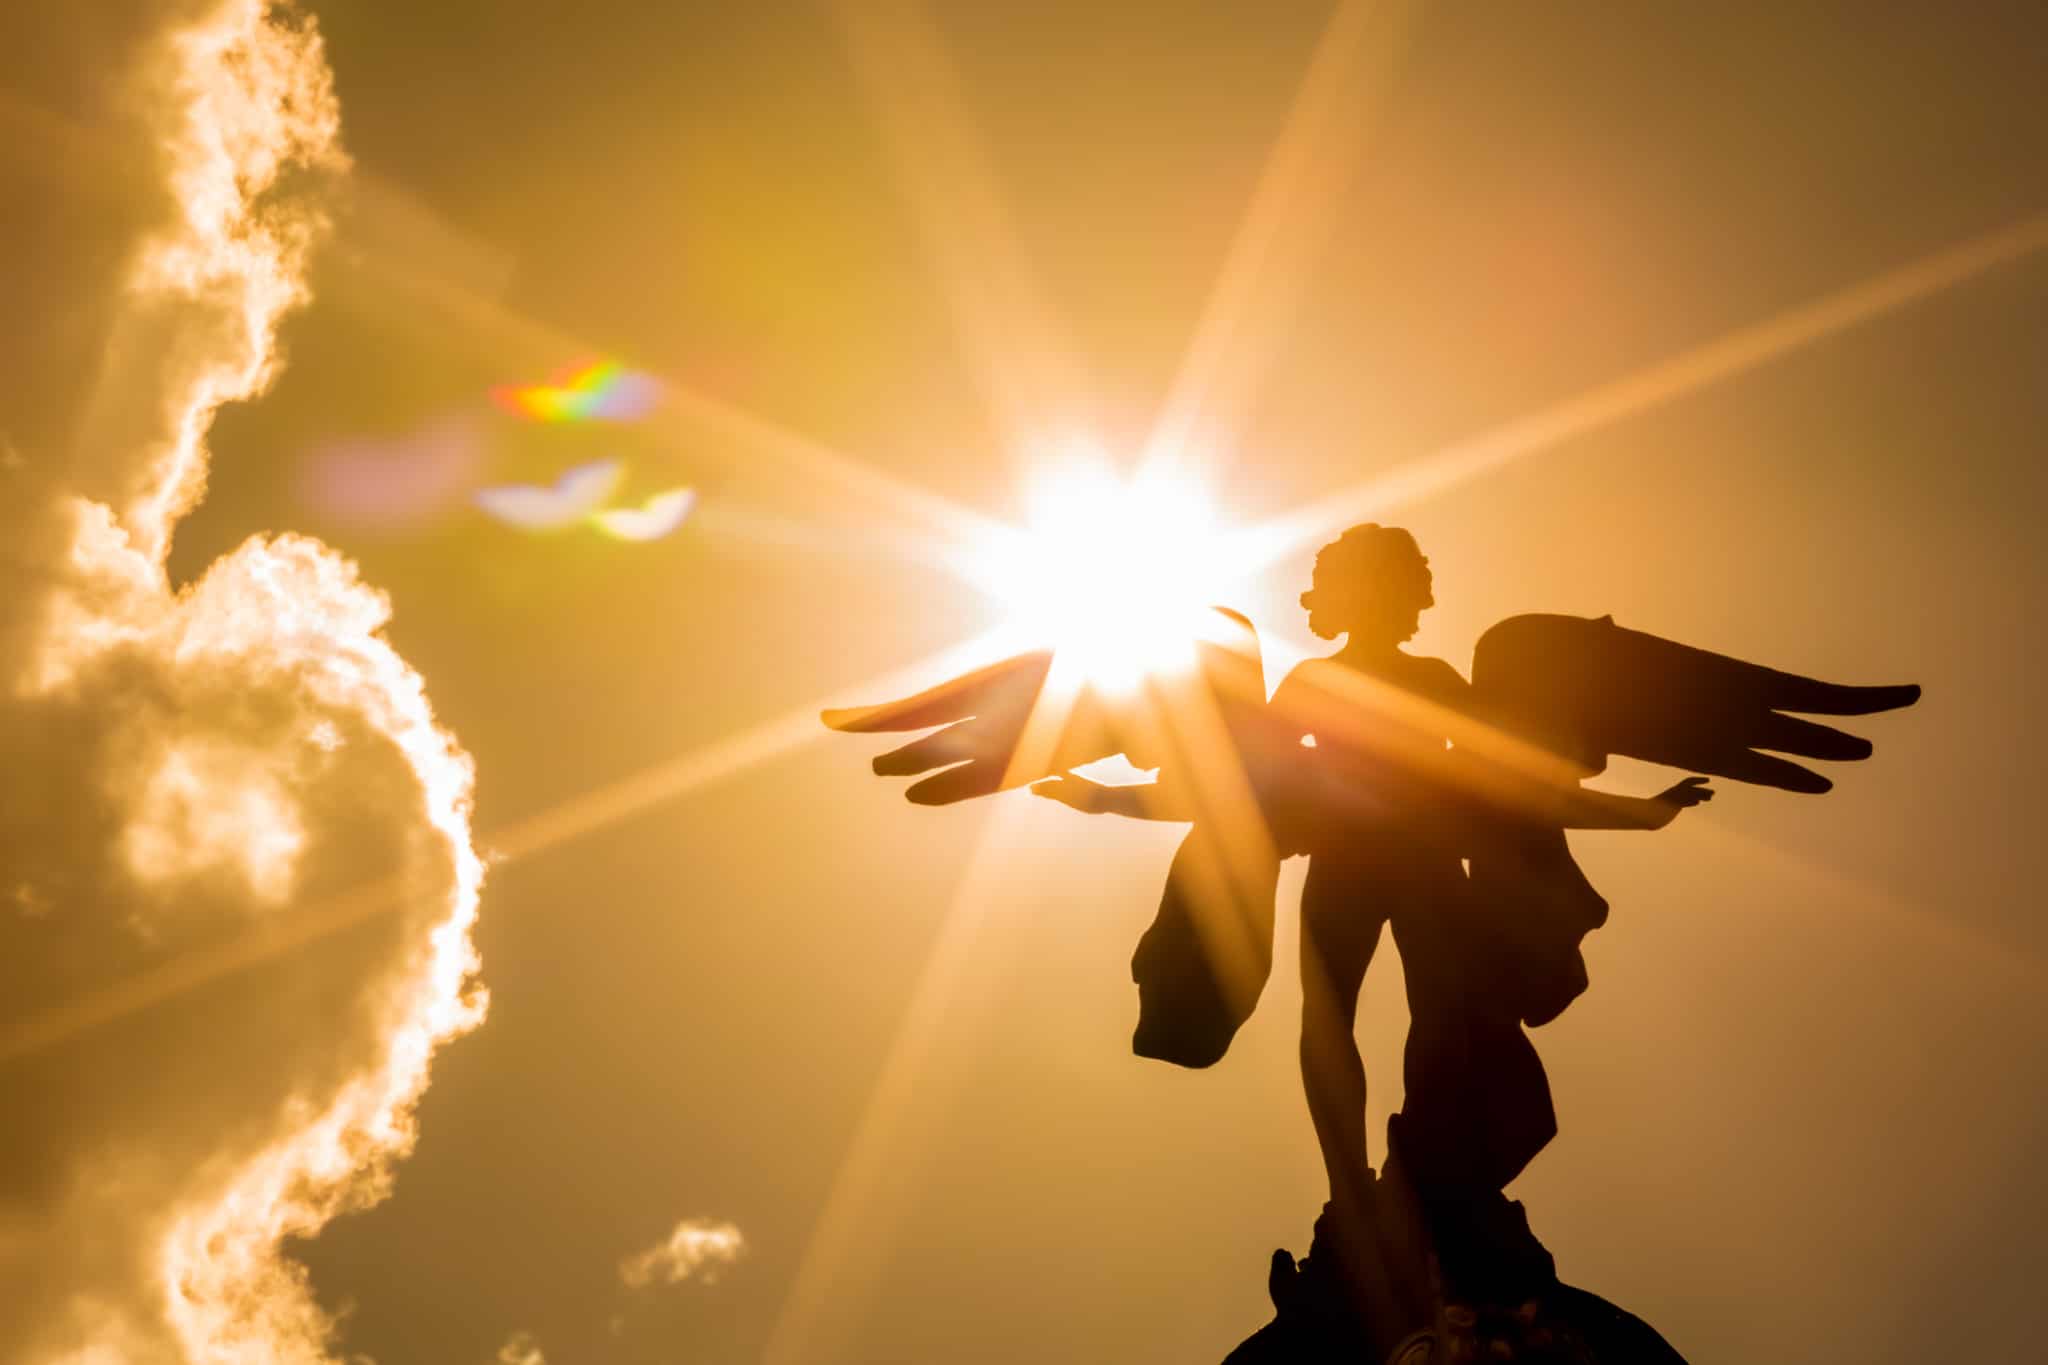 Már az ókorban is hittek bennük: angyalok a spirituális életben